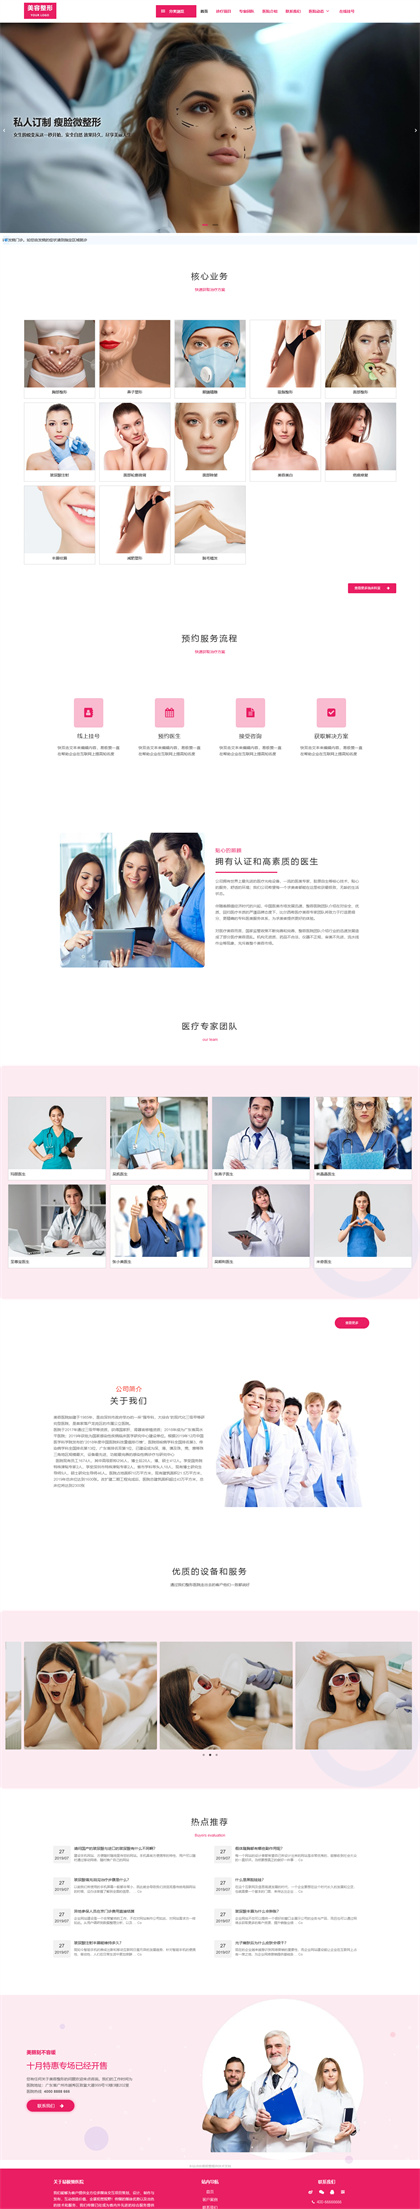 医疗美容-整形医院-整容医院-整容机构-医美加盟-中韩整形-网站模板网站模板预览图片